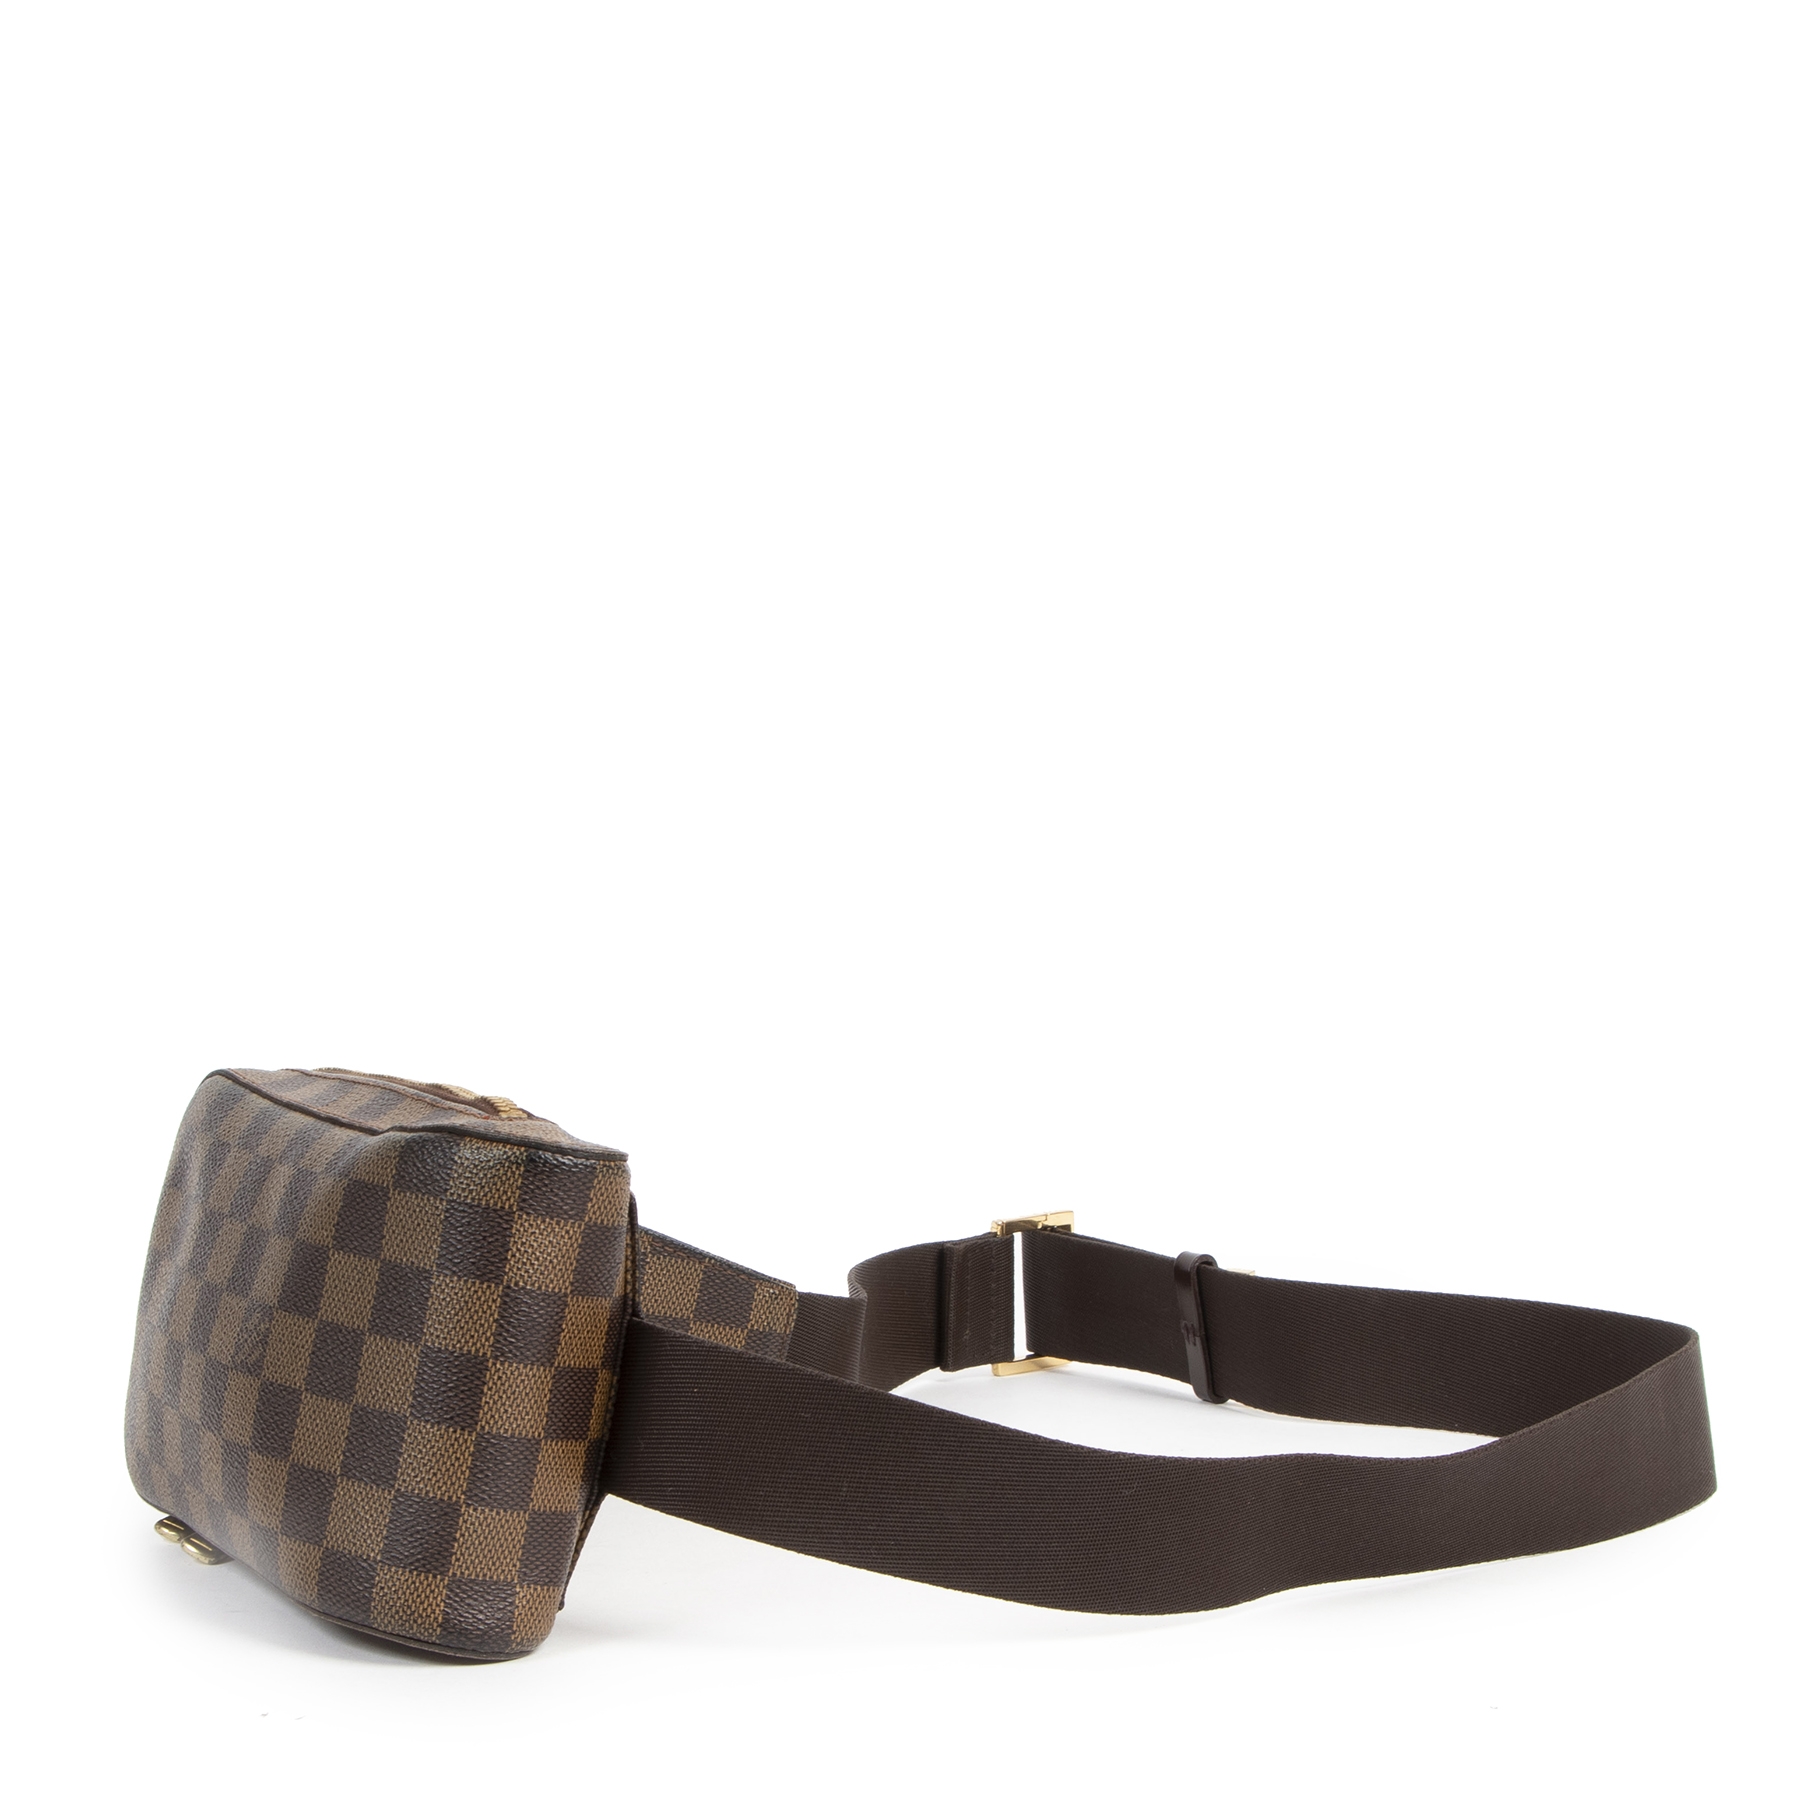 Louis Vuitton Geronimos Damier Ebene Waist Bag ○ Labellov ○ Buy